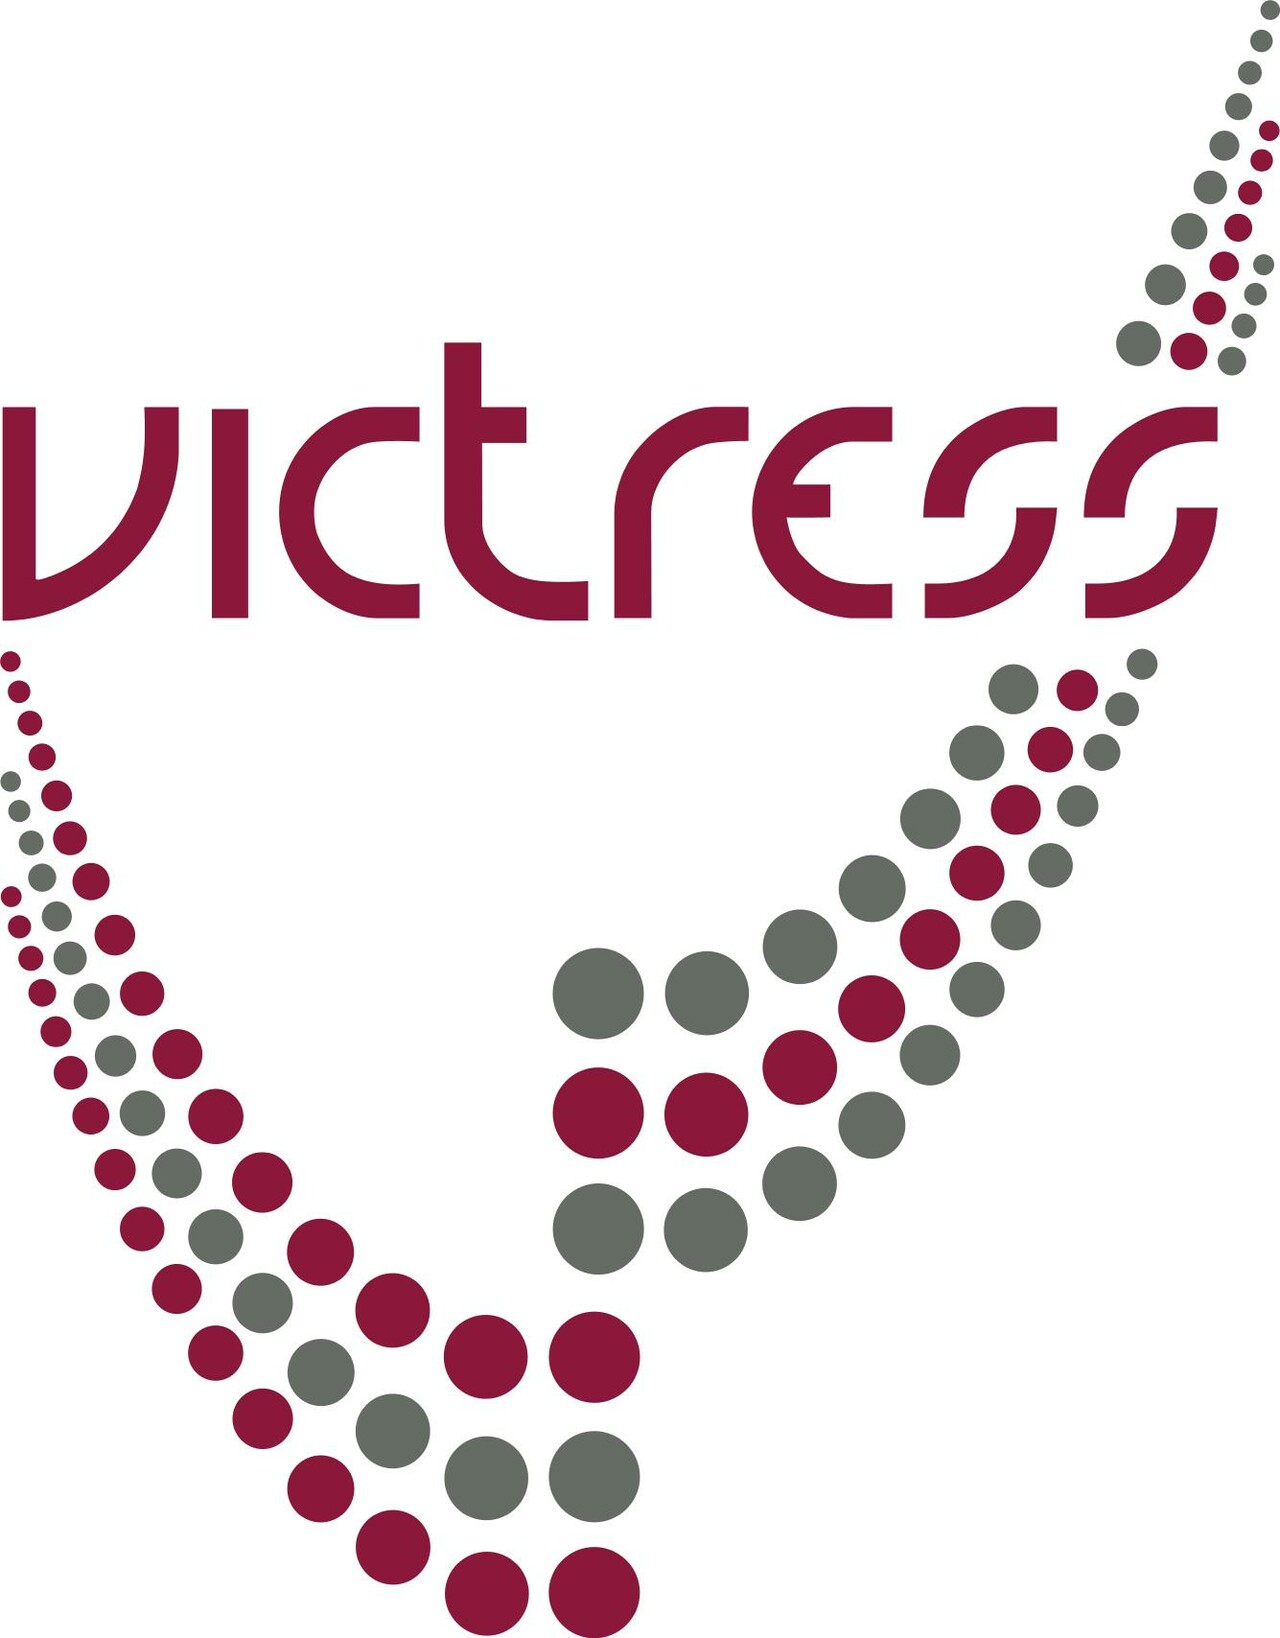 VICTRESS Award logo